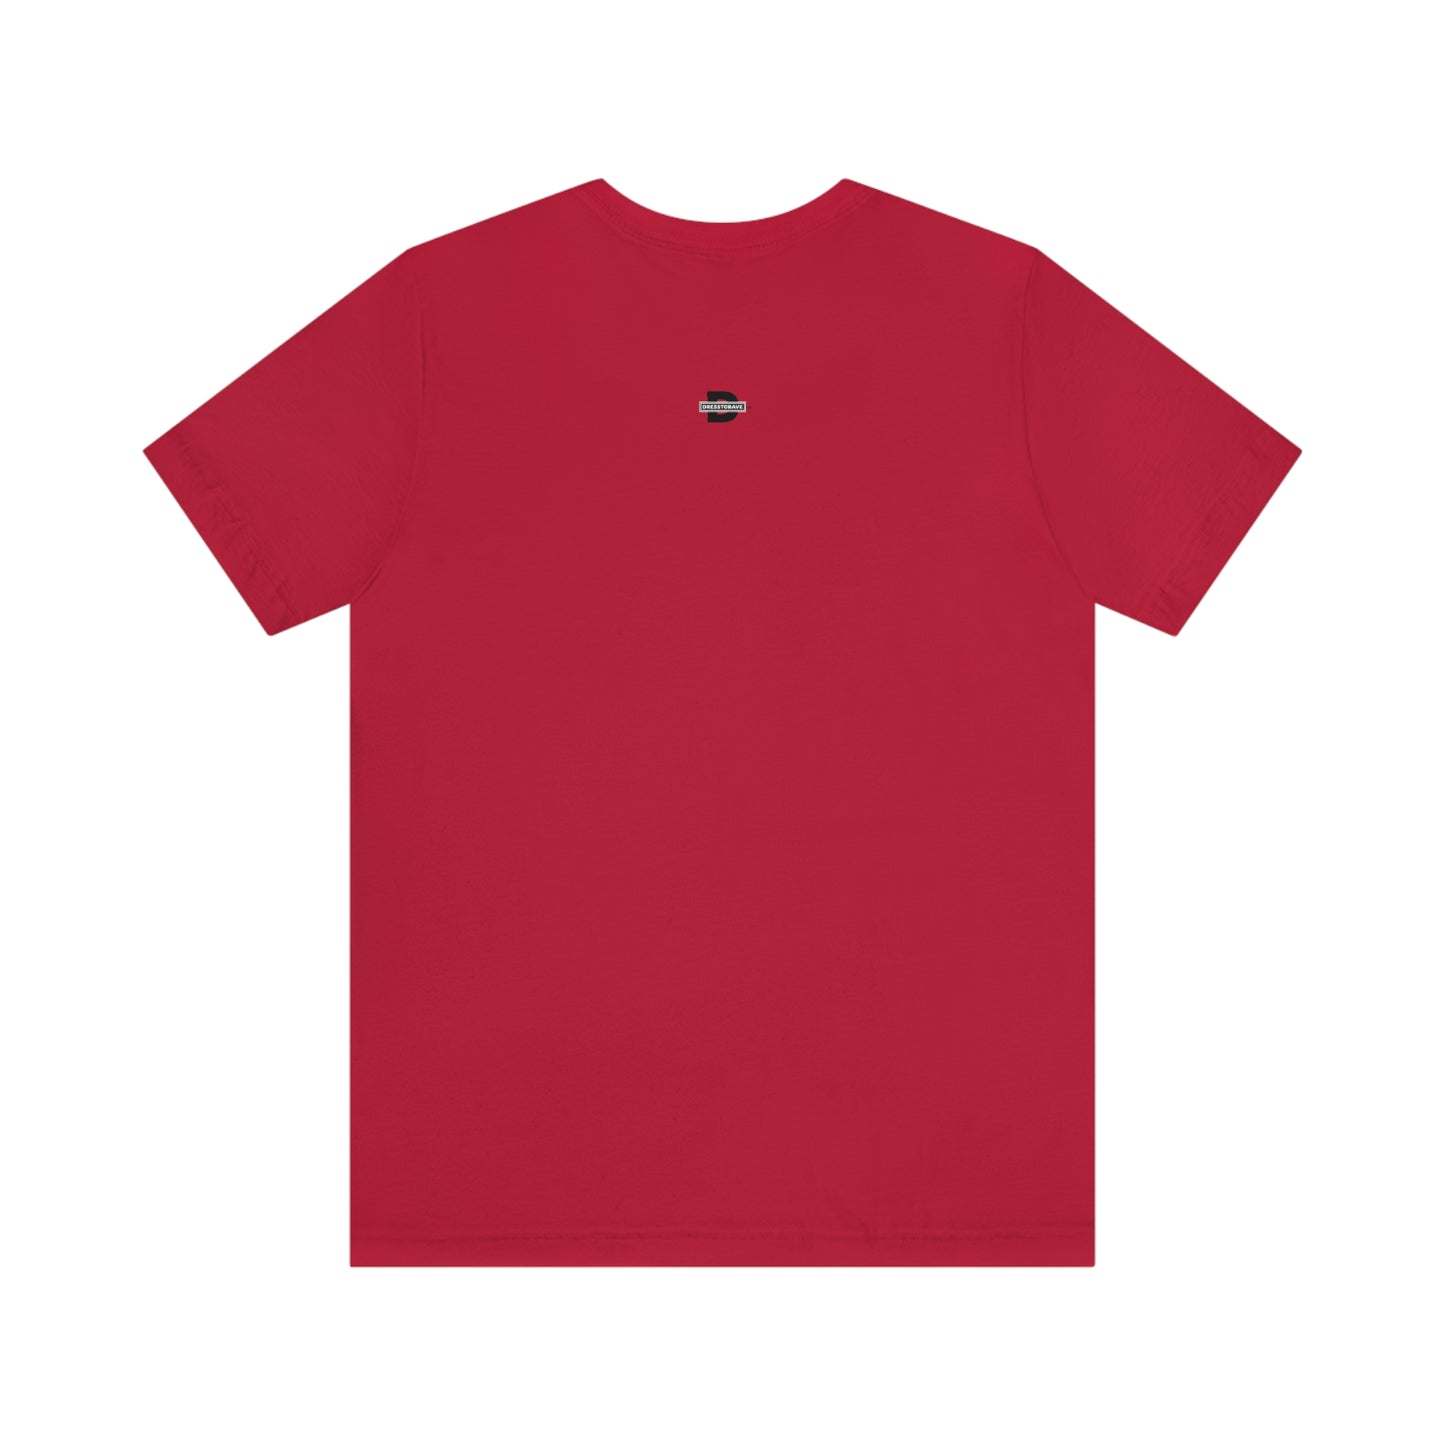 Melting Smiley | Unisex Jersey Short Sleeve T-Shirt